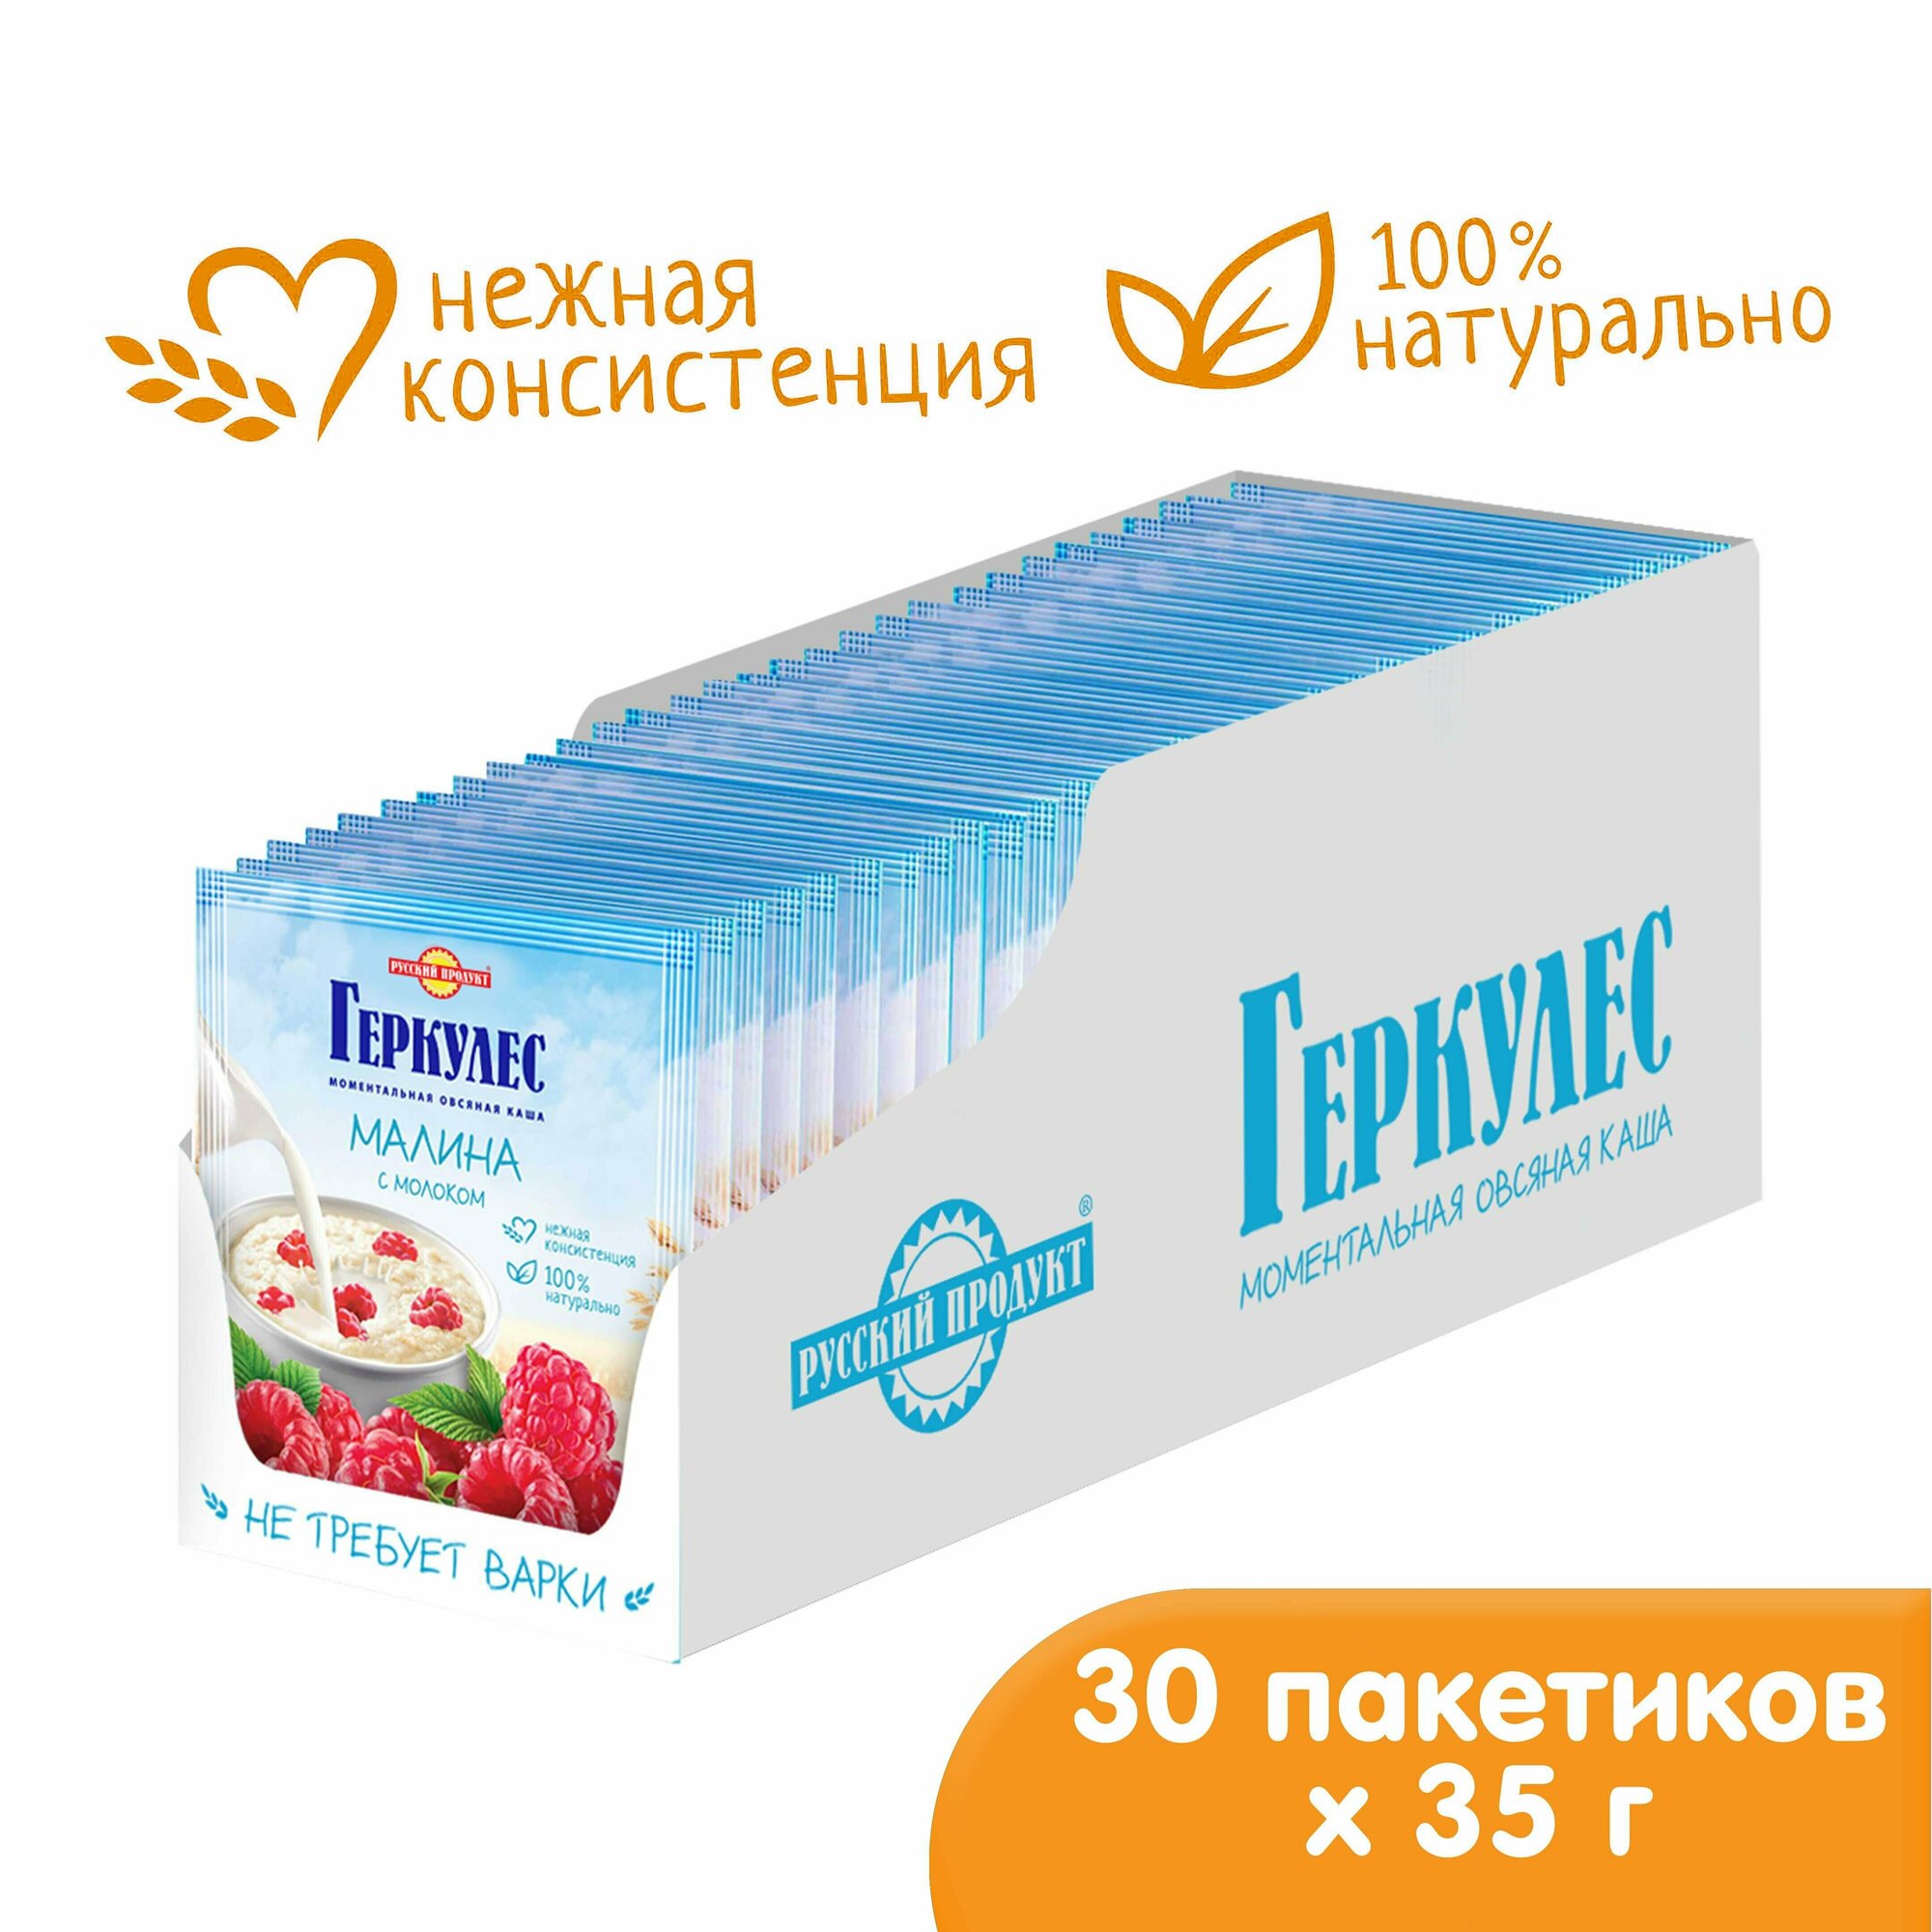 Овсяная каша быстрого приготовления Геркулес с малиной (и молоком) 35 гр / 30 шт в коробке, Русский продукт